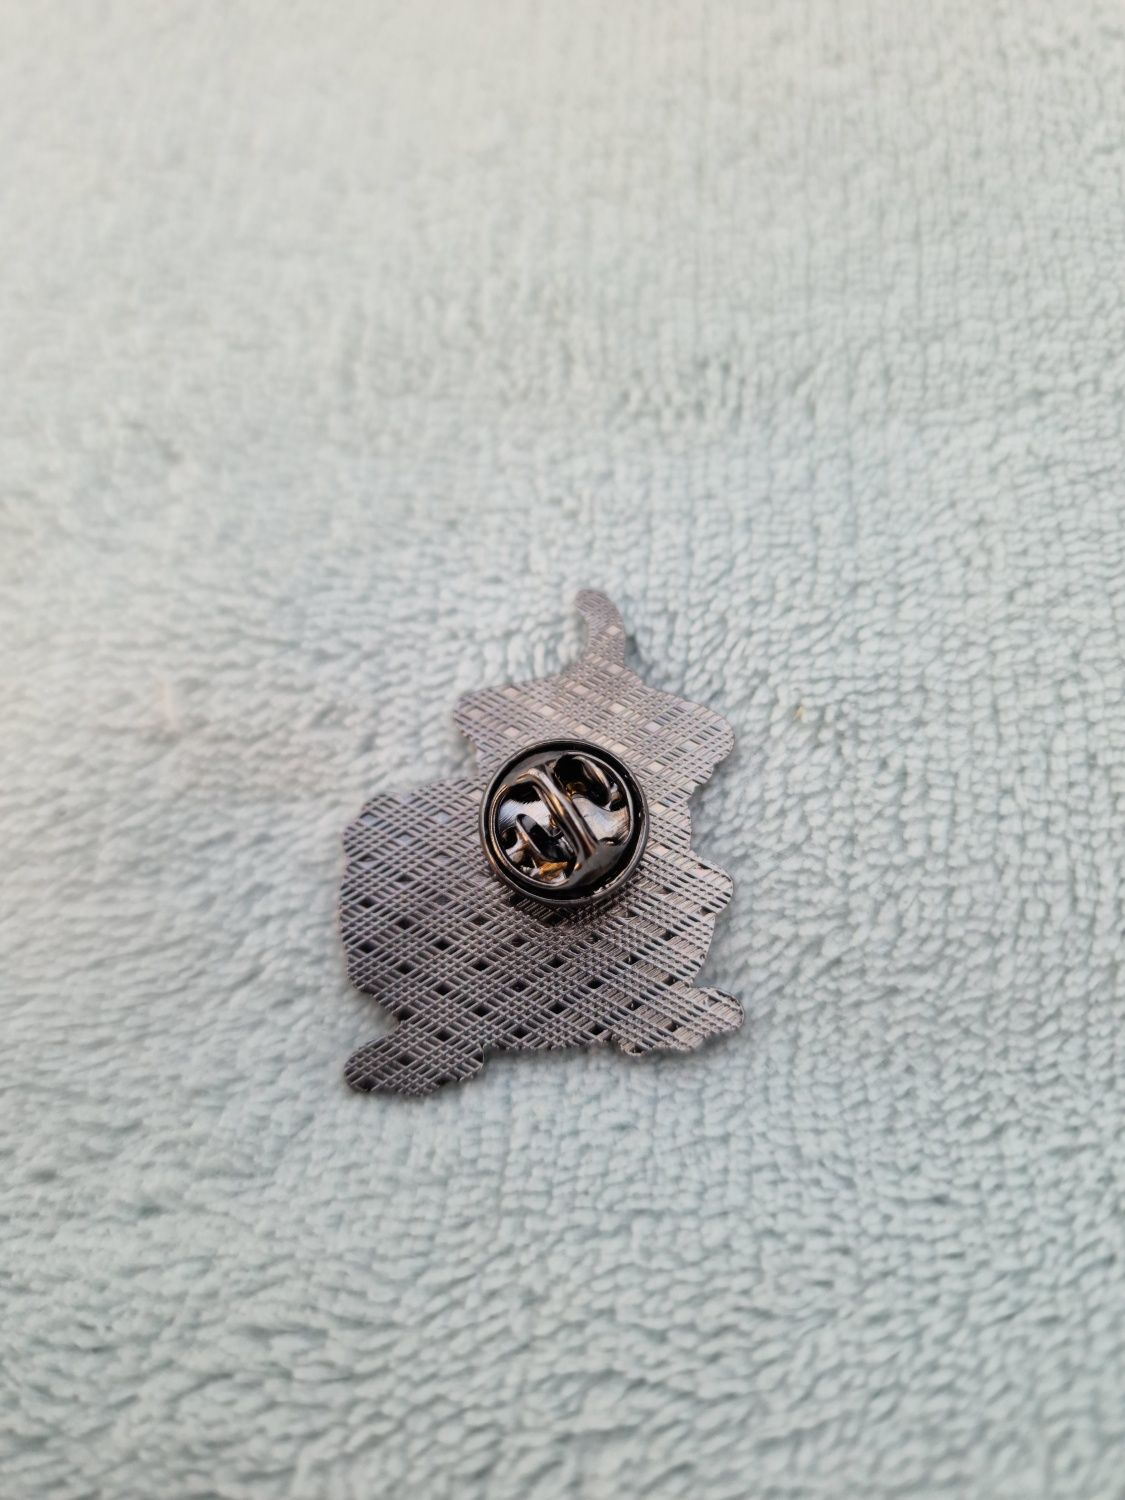 Przypinka pin pins broszka kaczka duck goose alternative Przypinka pin